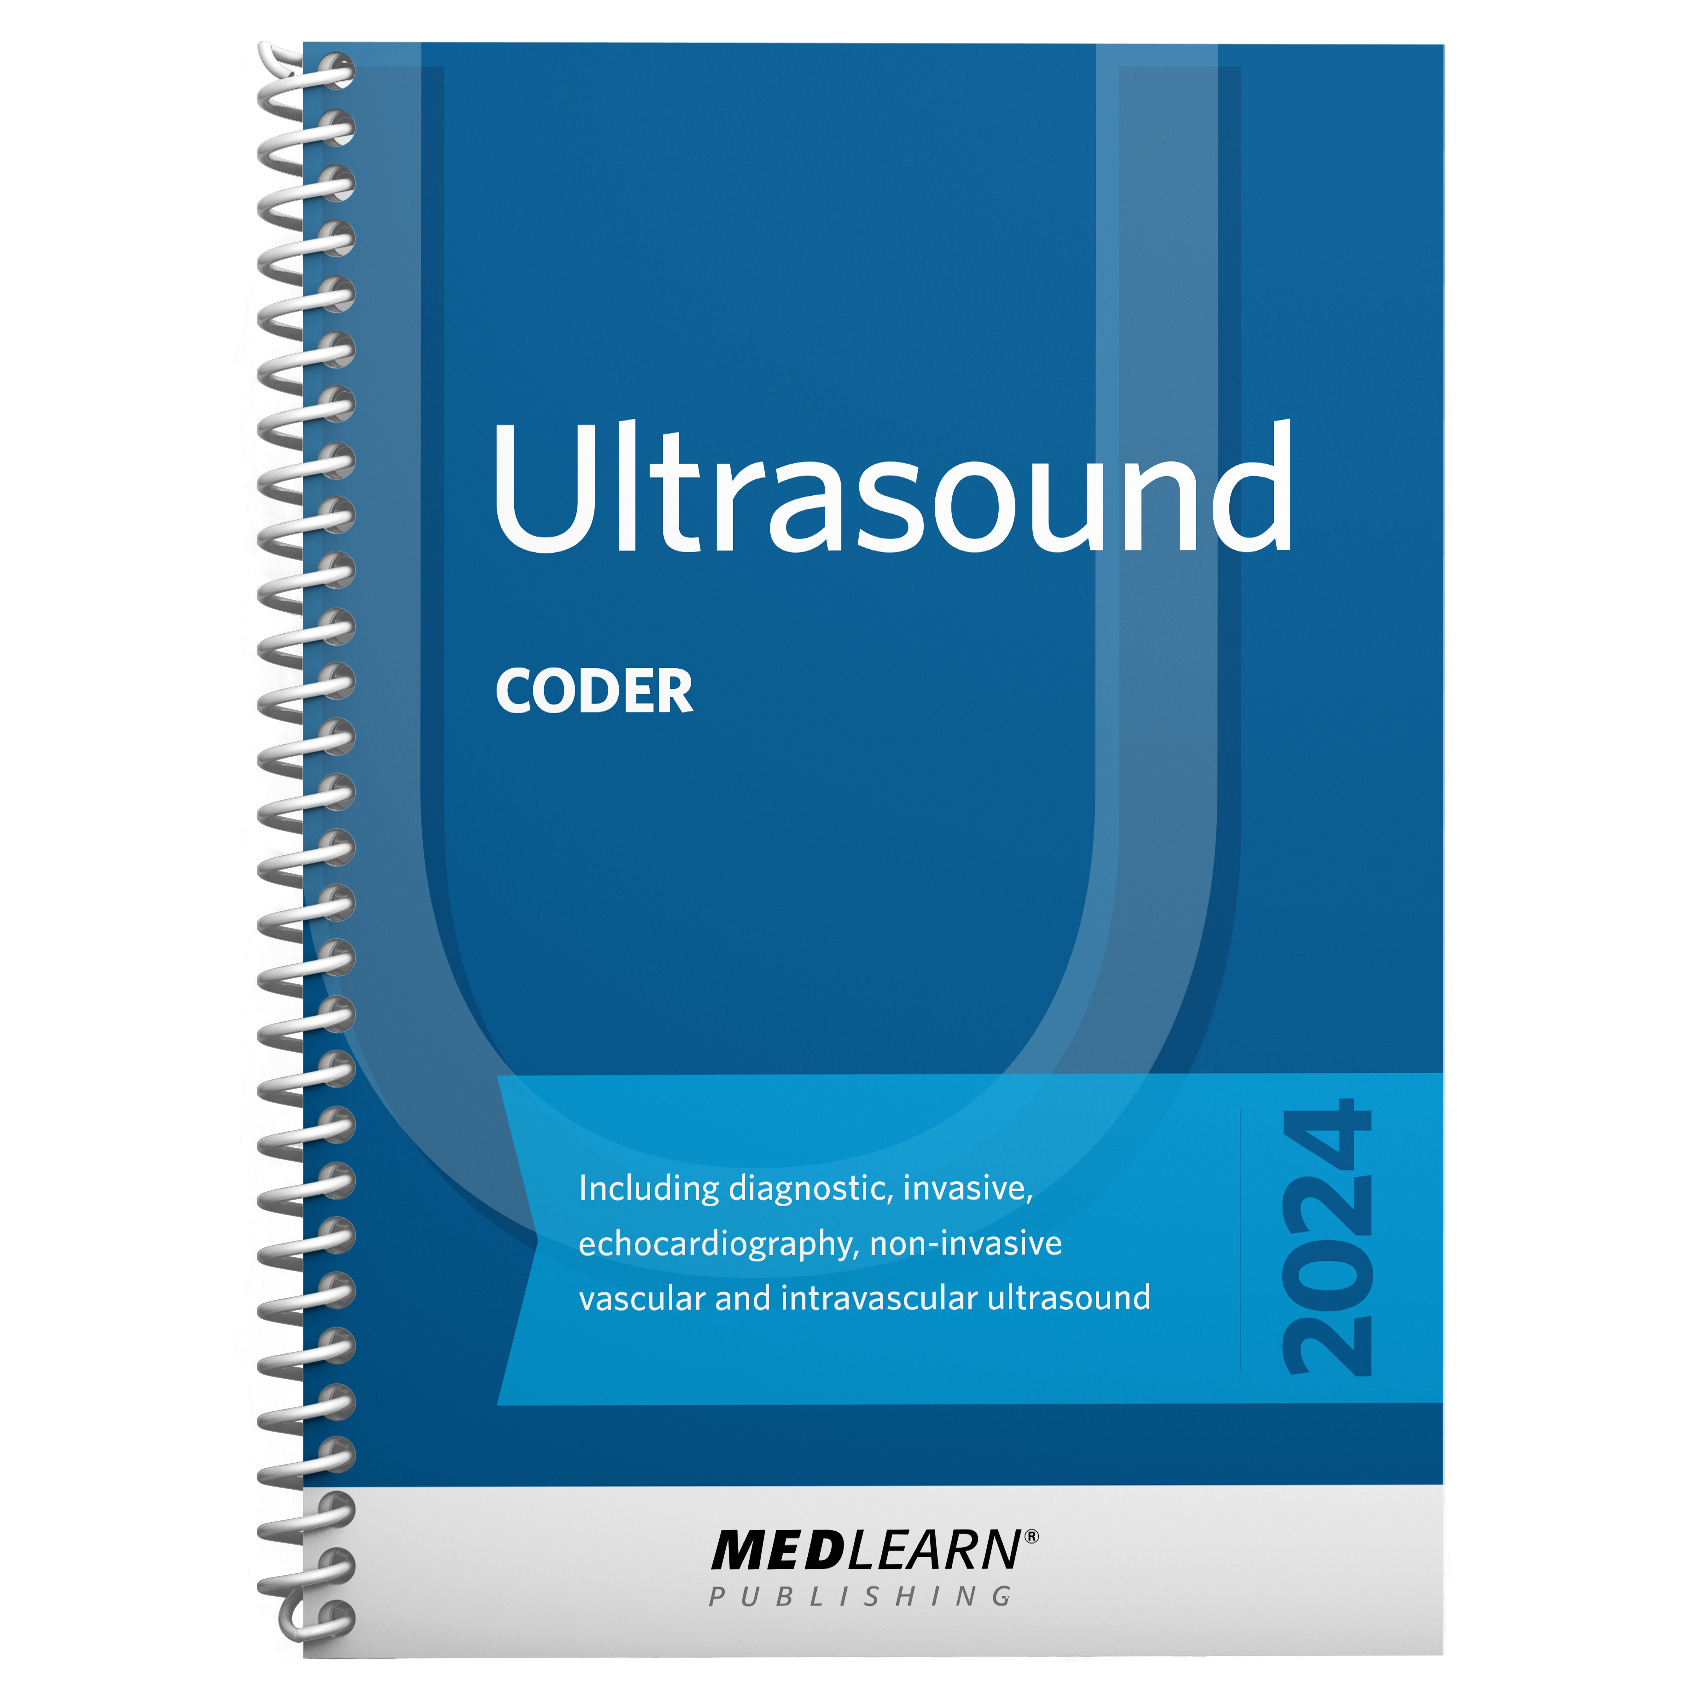 Ultrasound Coder